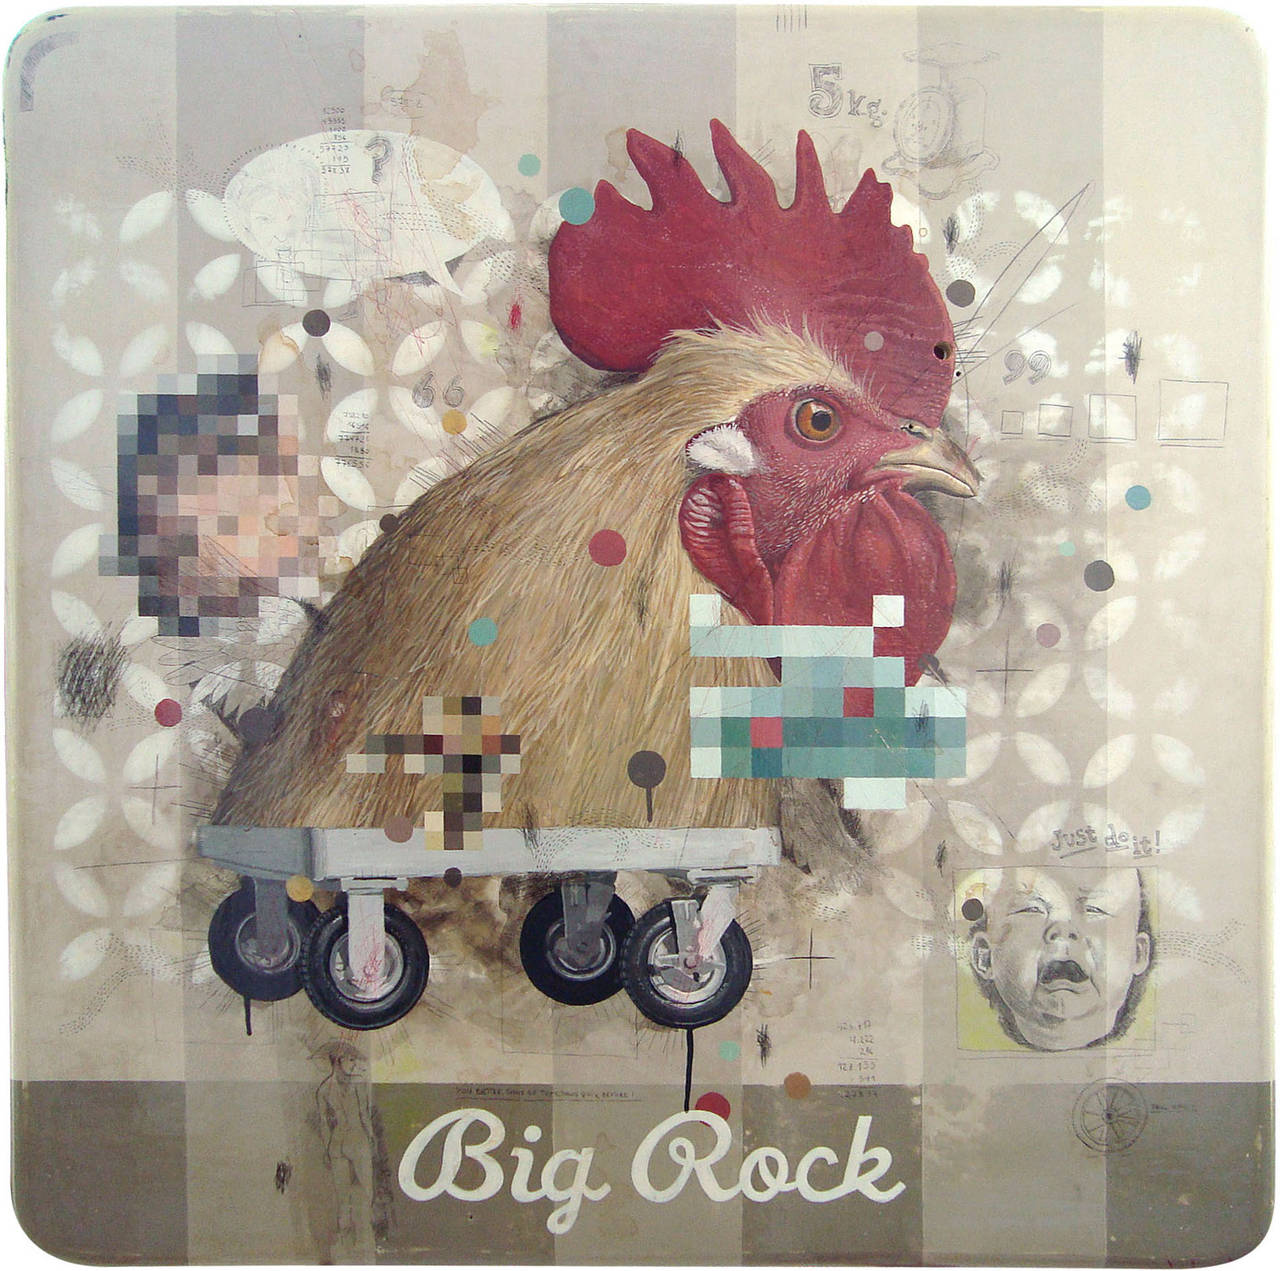 Peinture « Big Rock » de style photoréaliste et surréaliste sur panneau de bois